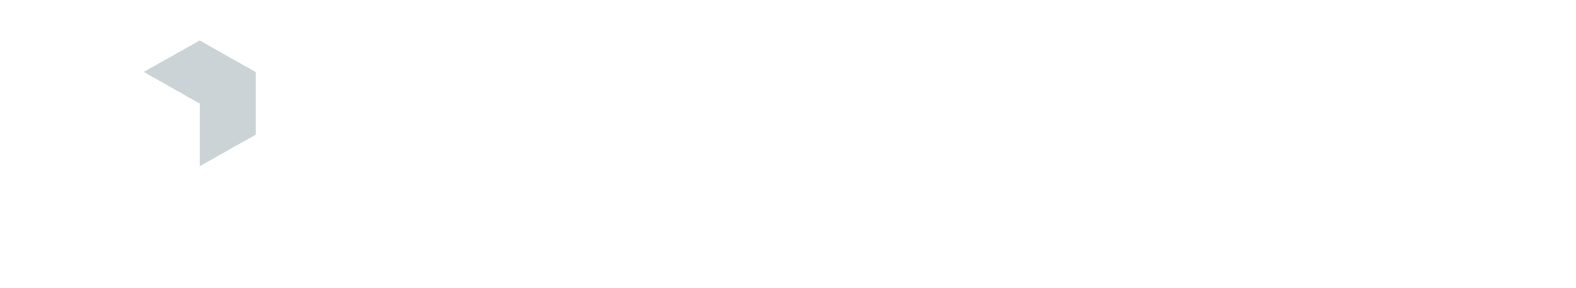 Cornerstone Building Brands Logo groß für dunkle Hintergründe (transparentes PNG)